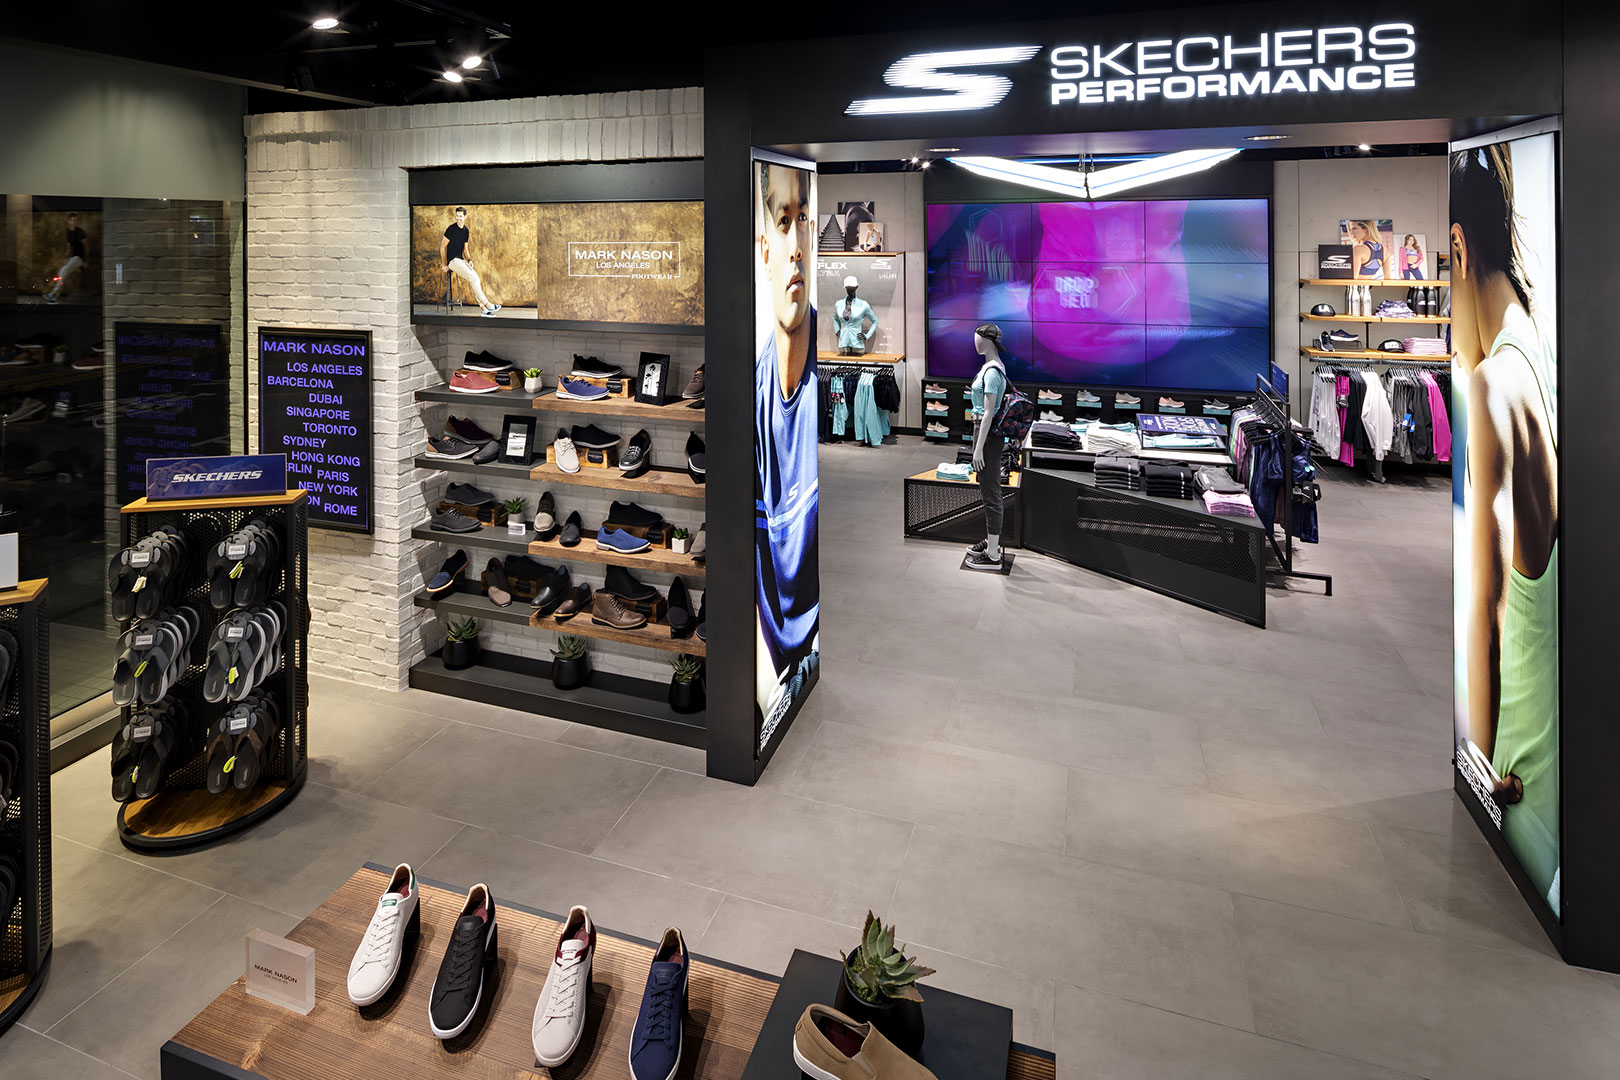 Skechers retail space